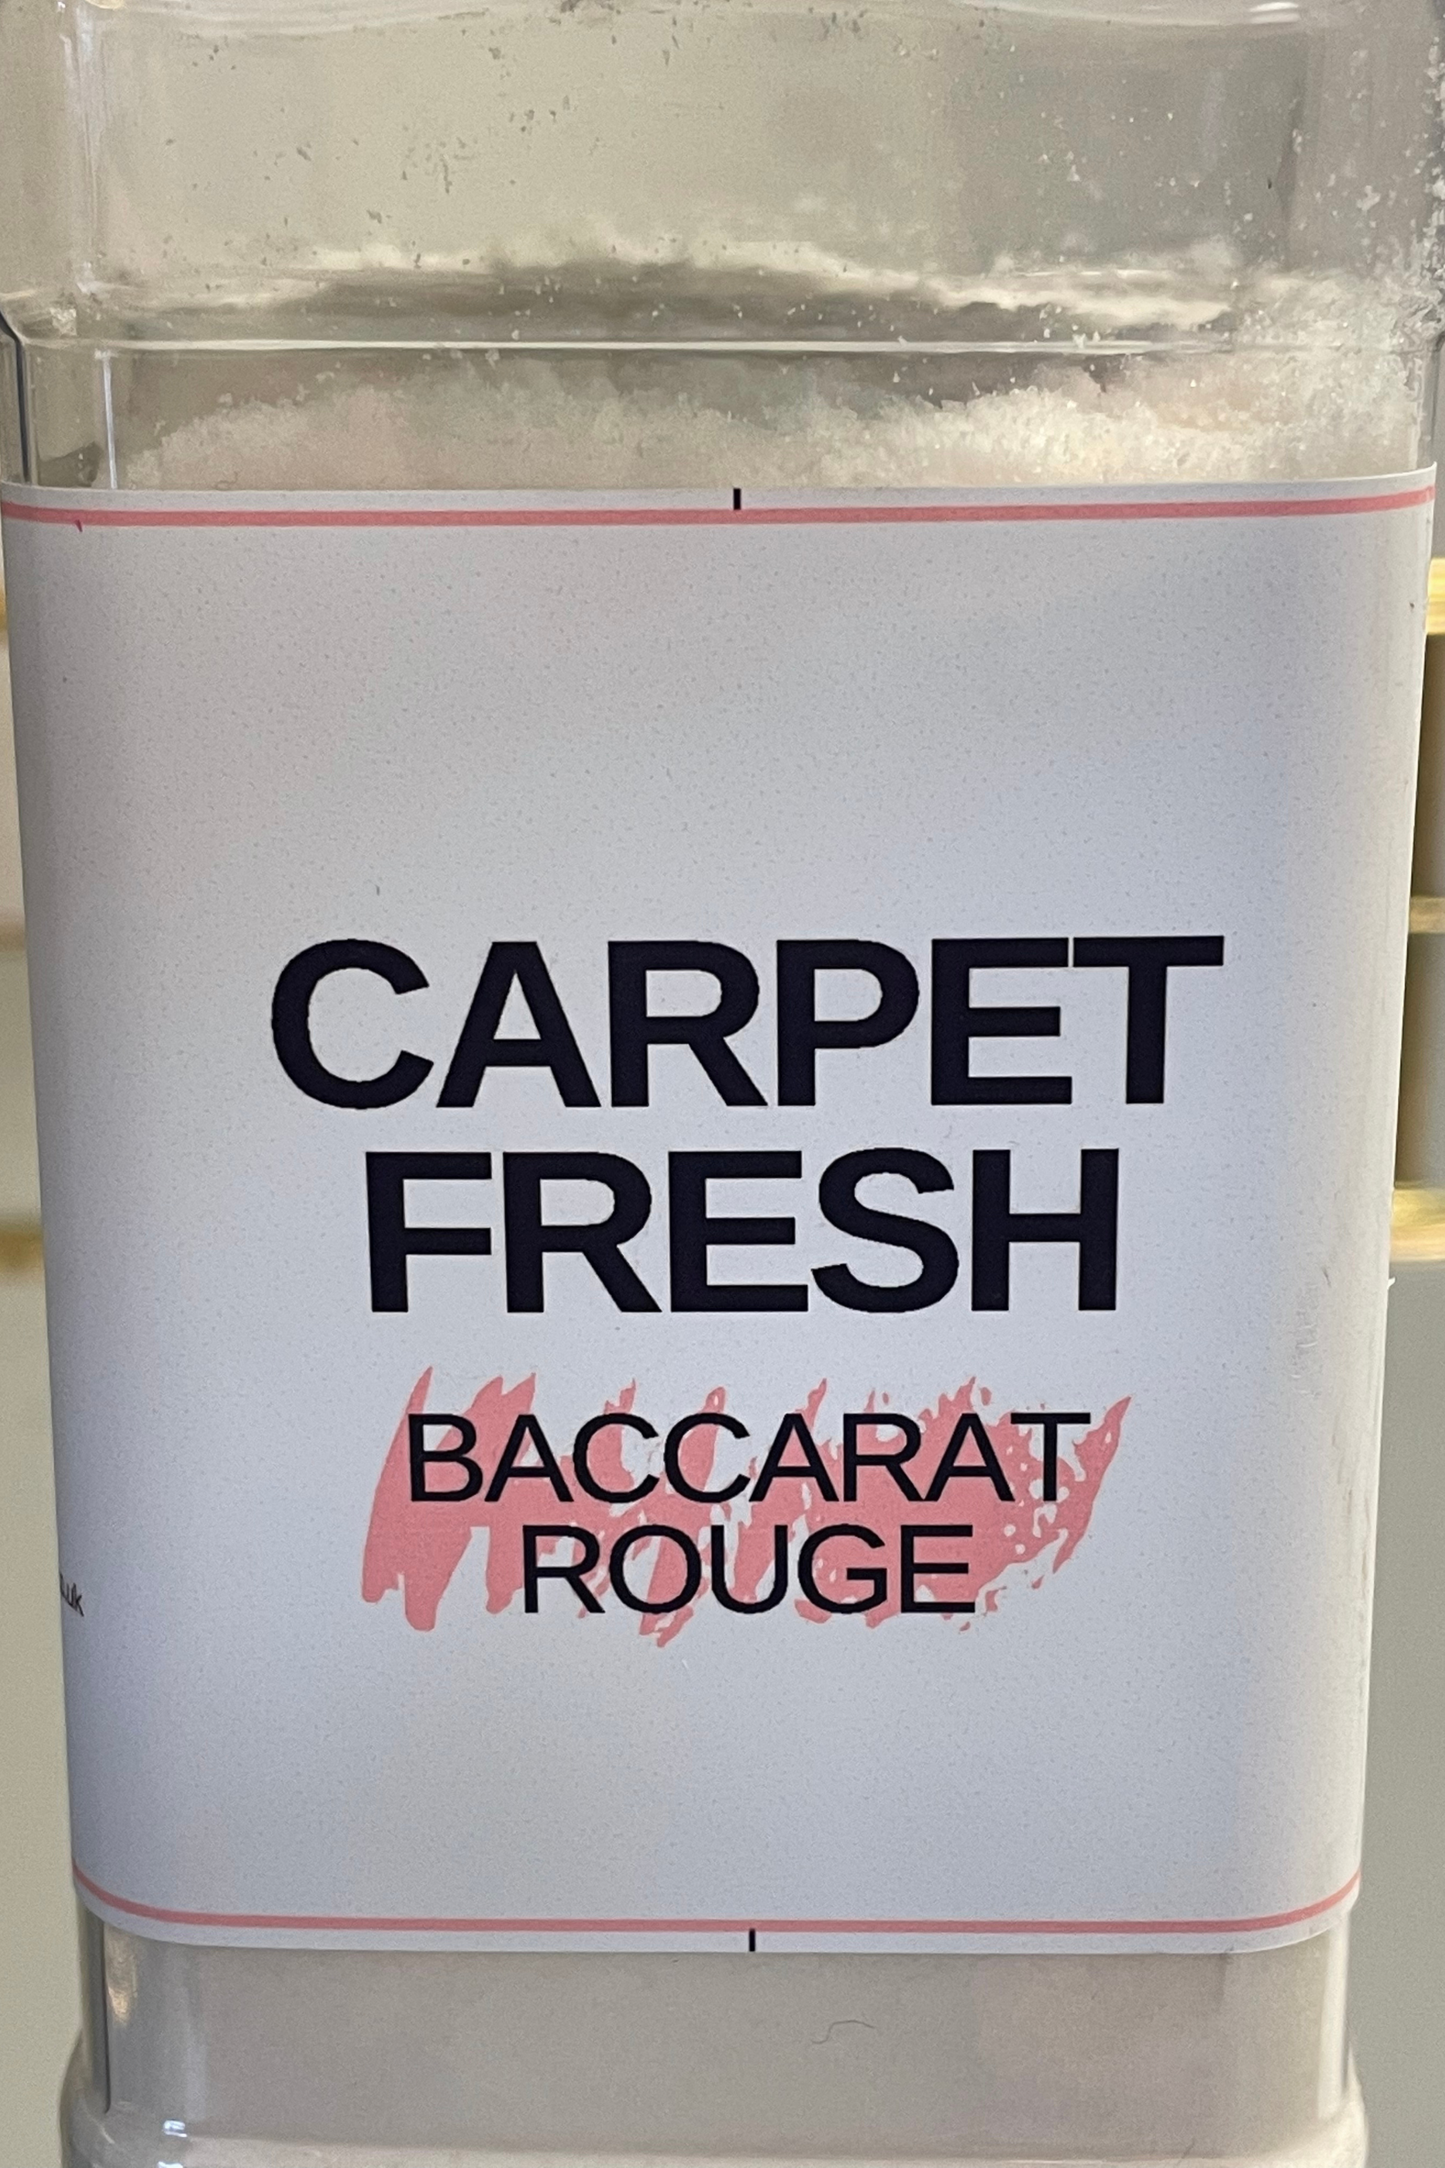 Baccarat Rouge Carpet Freshener